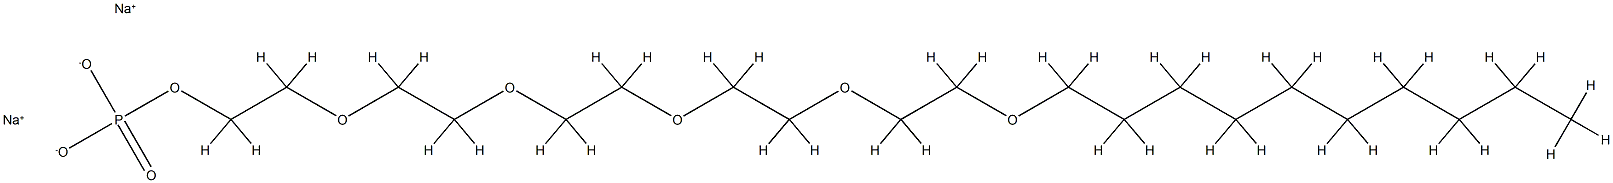 Phosphoric acid 3,6,9,12,15-pentaoxapentacosan-1-yldisodium salt|